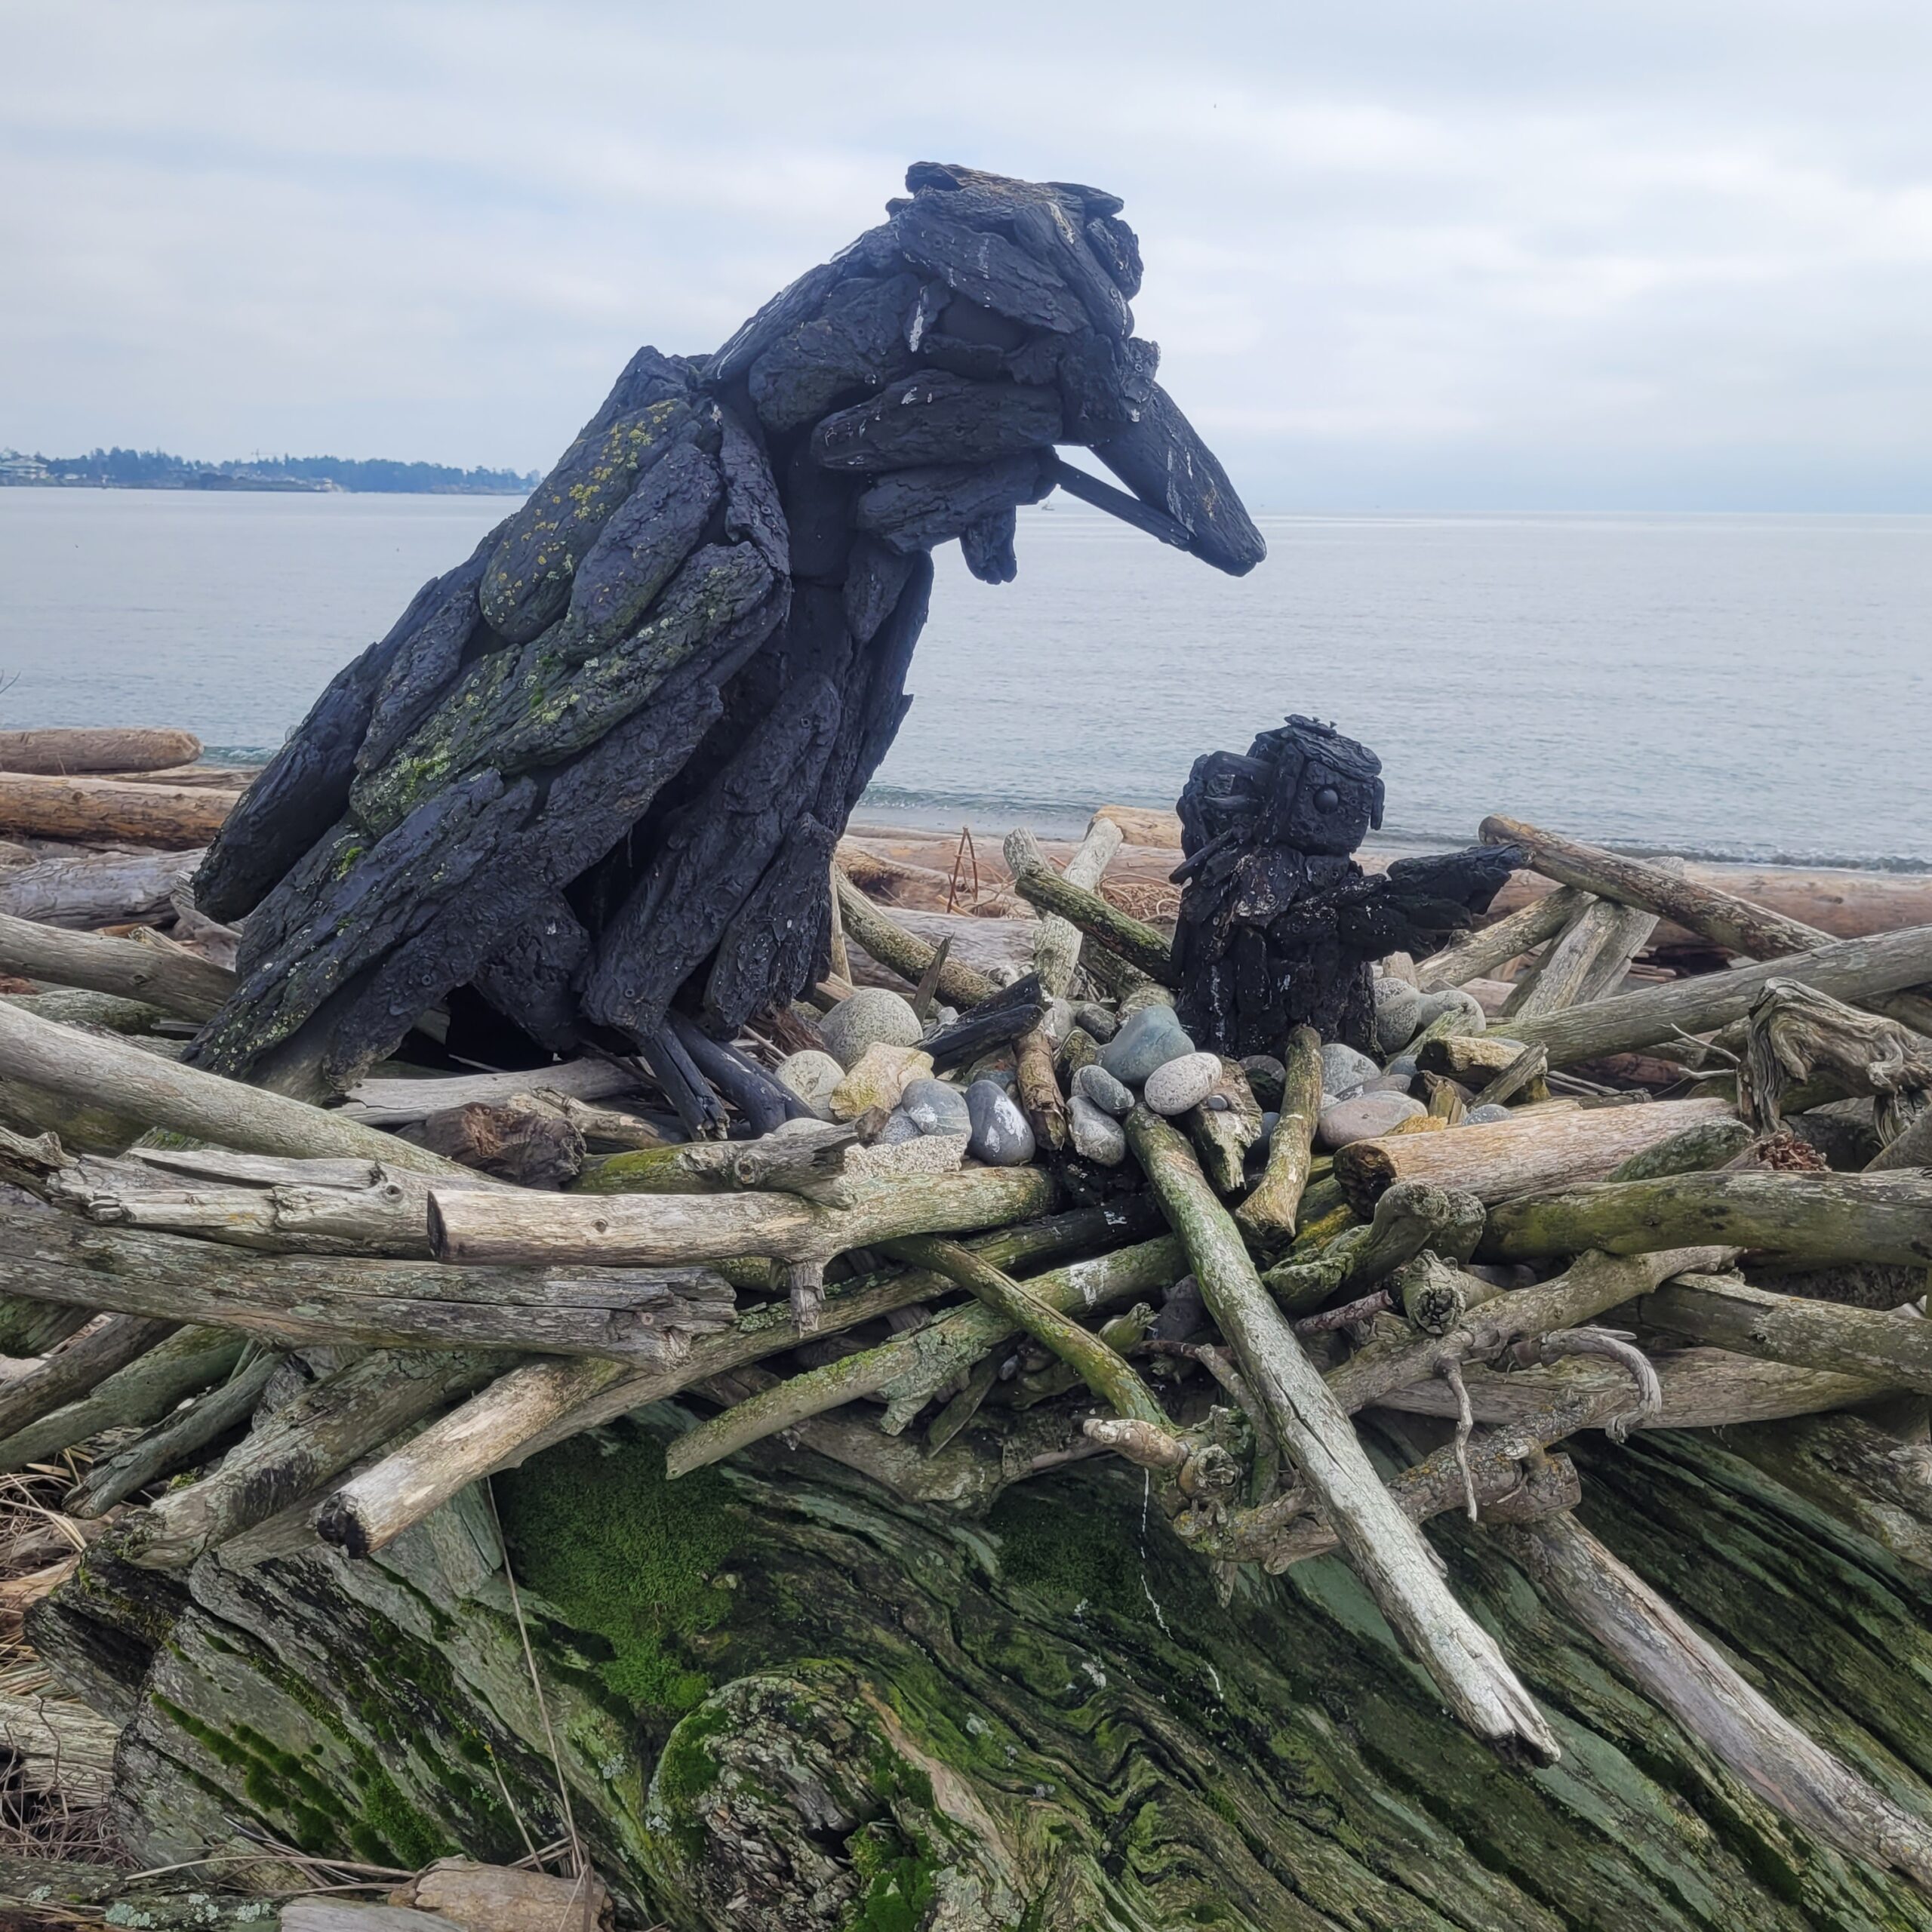 a driftwood sculpture of a raven